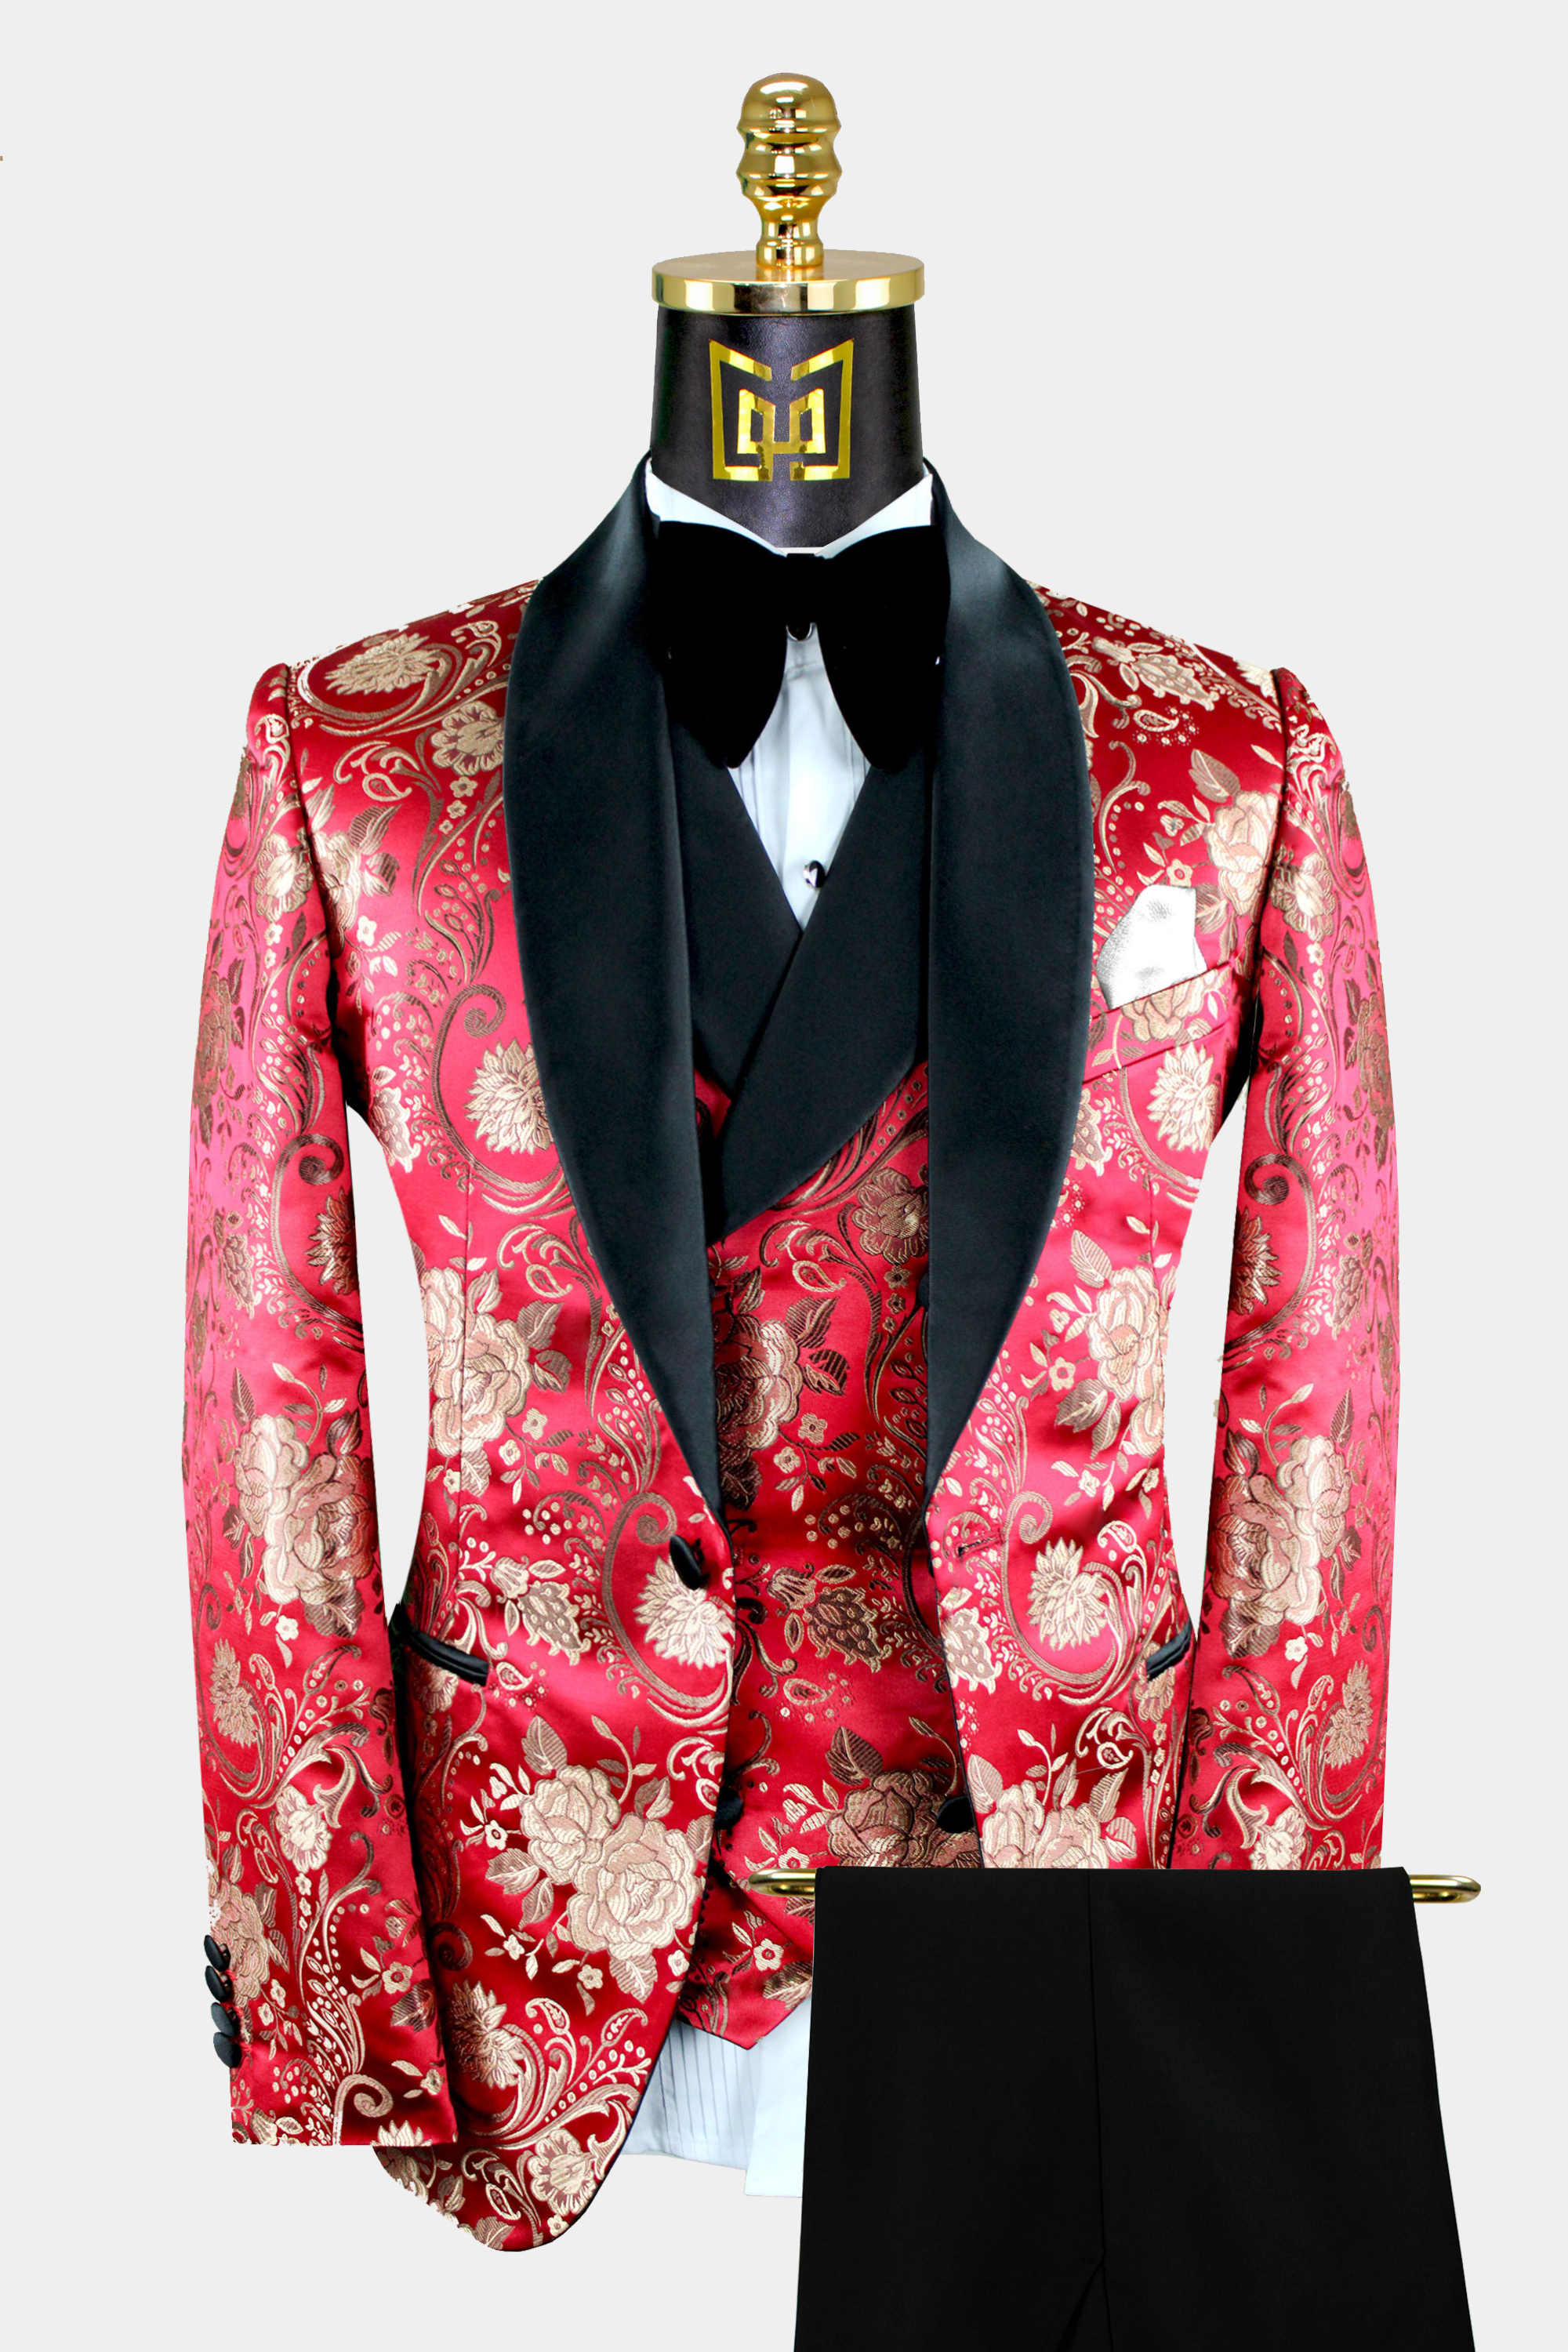 Black-Red-and-Gold-Tuxedo-Wedding-Suit-from-Gentlemansguru.com_